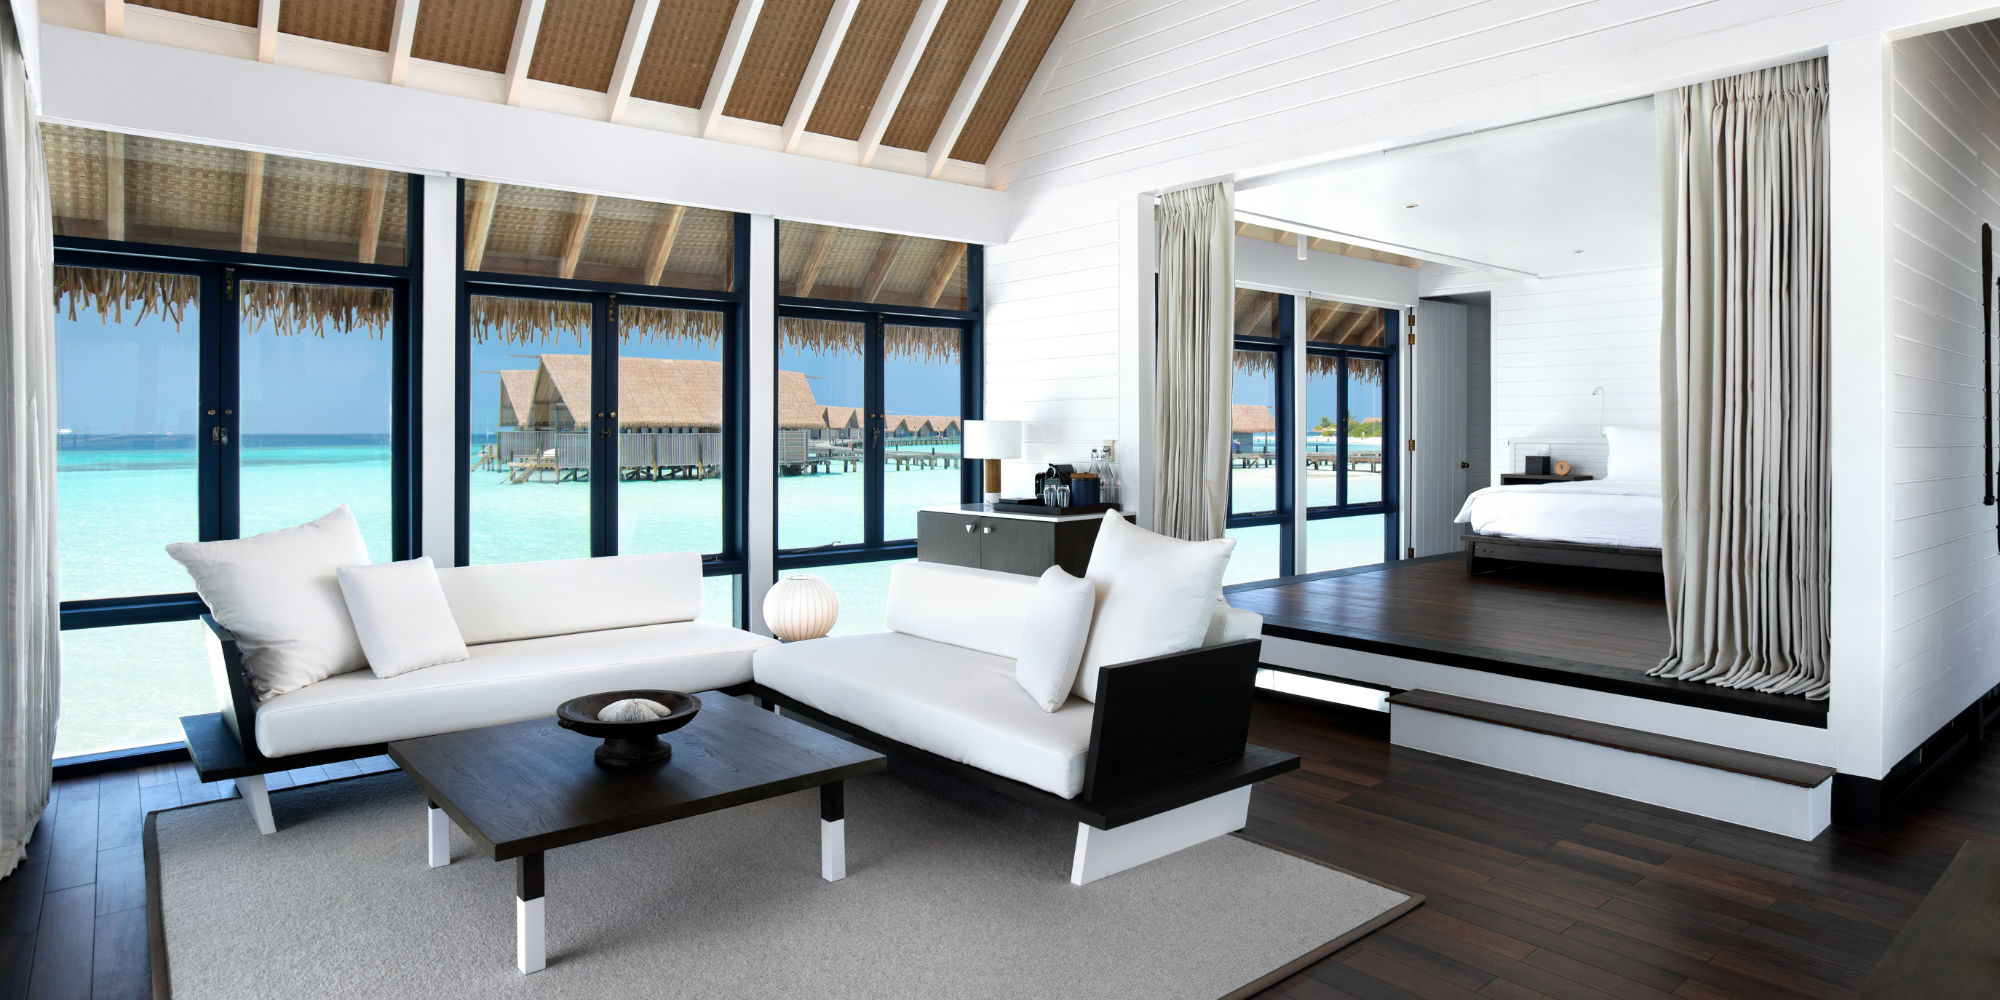 interior design south male maldives resort como cocoa